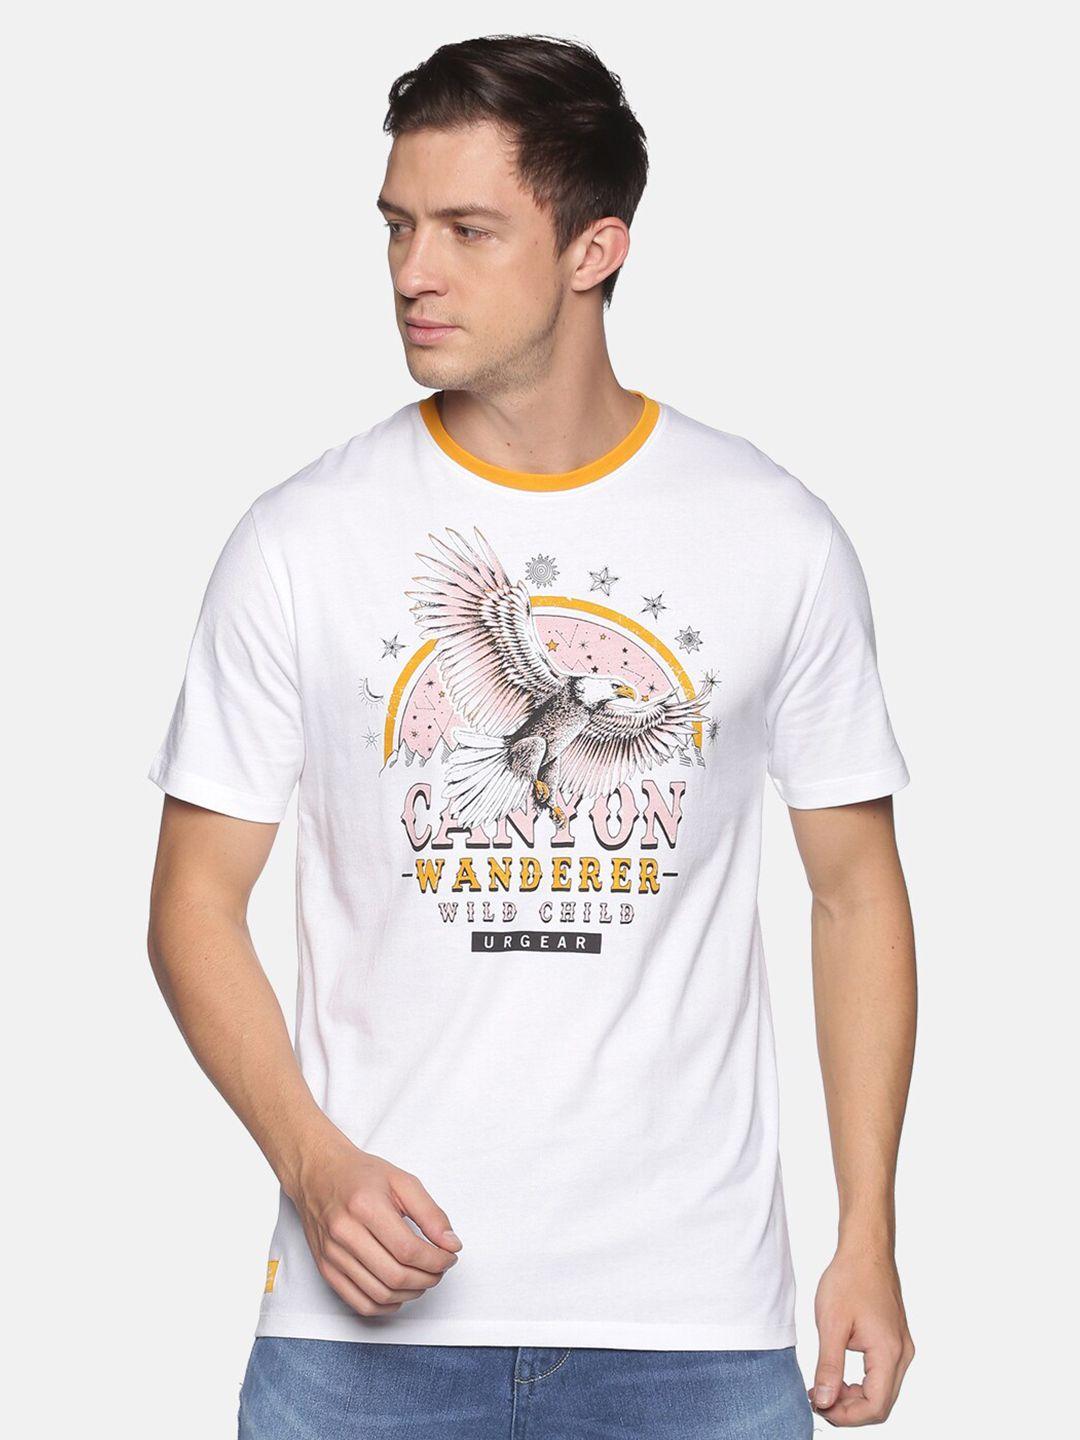 urgear men white & mustard yellow graphic printed t-shirt